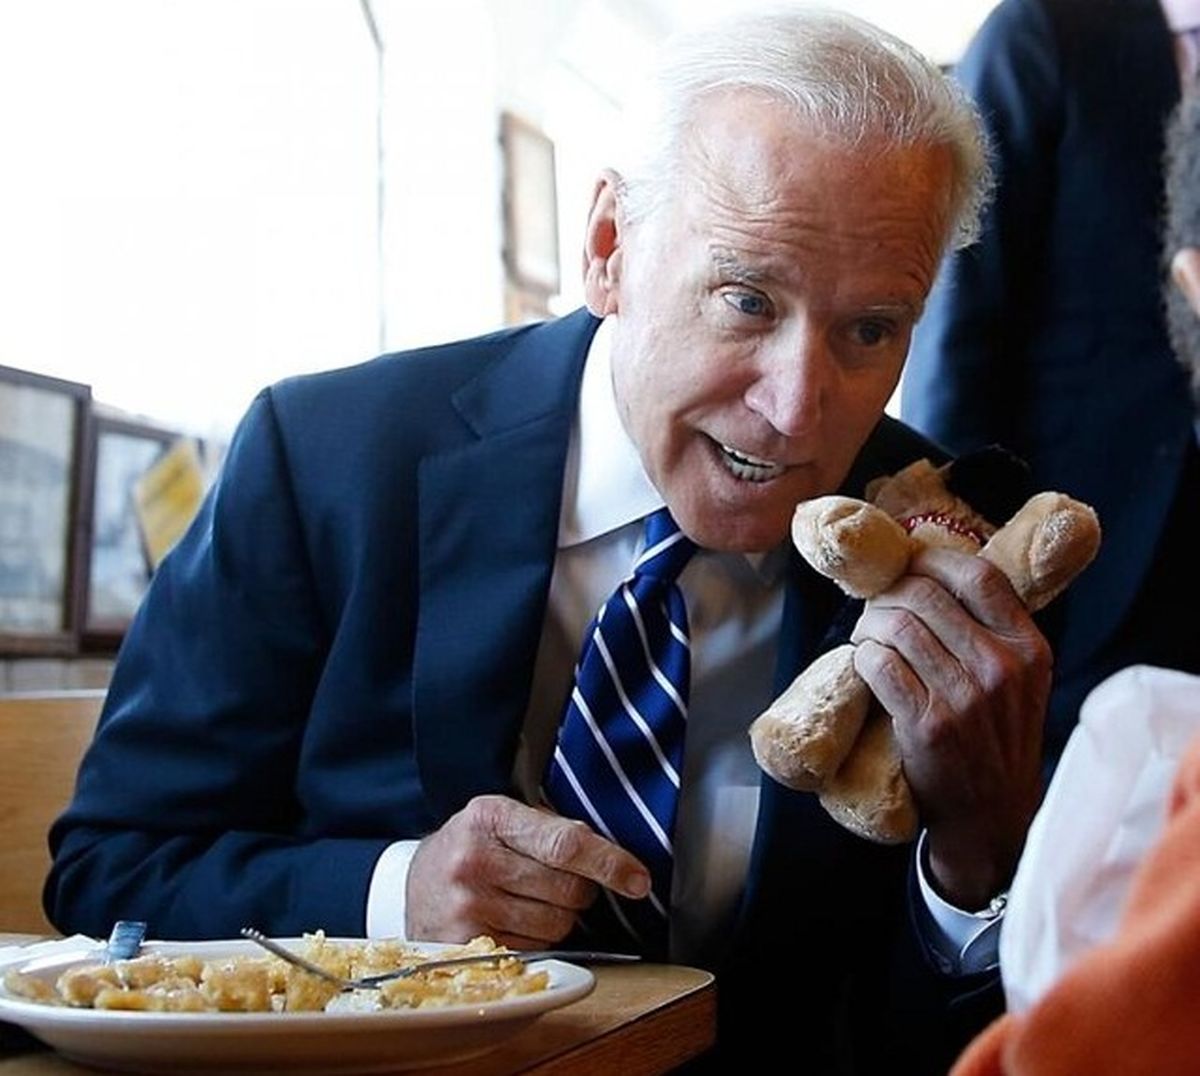 رئیس جمهوری با ذائقه یک کودک ۵ ساله